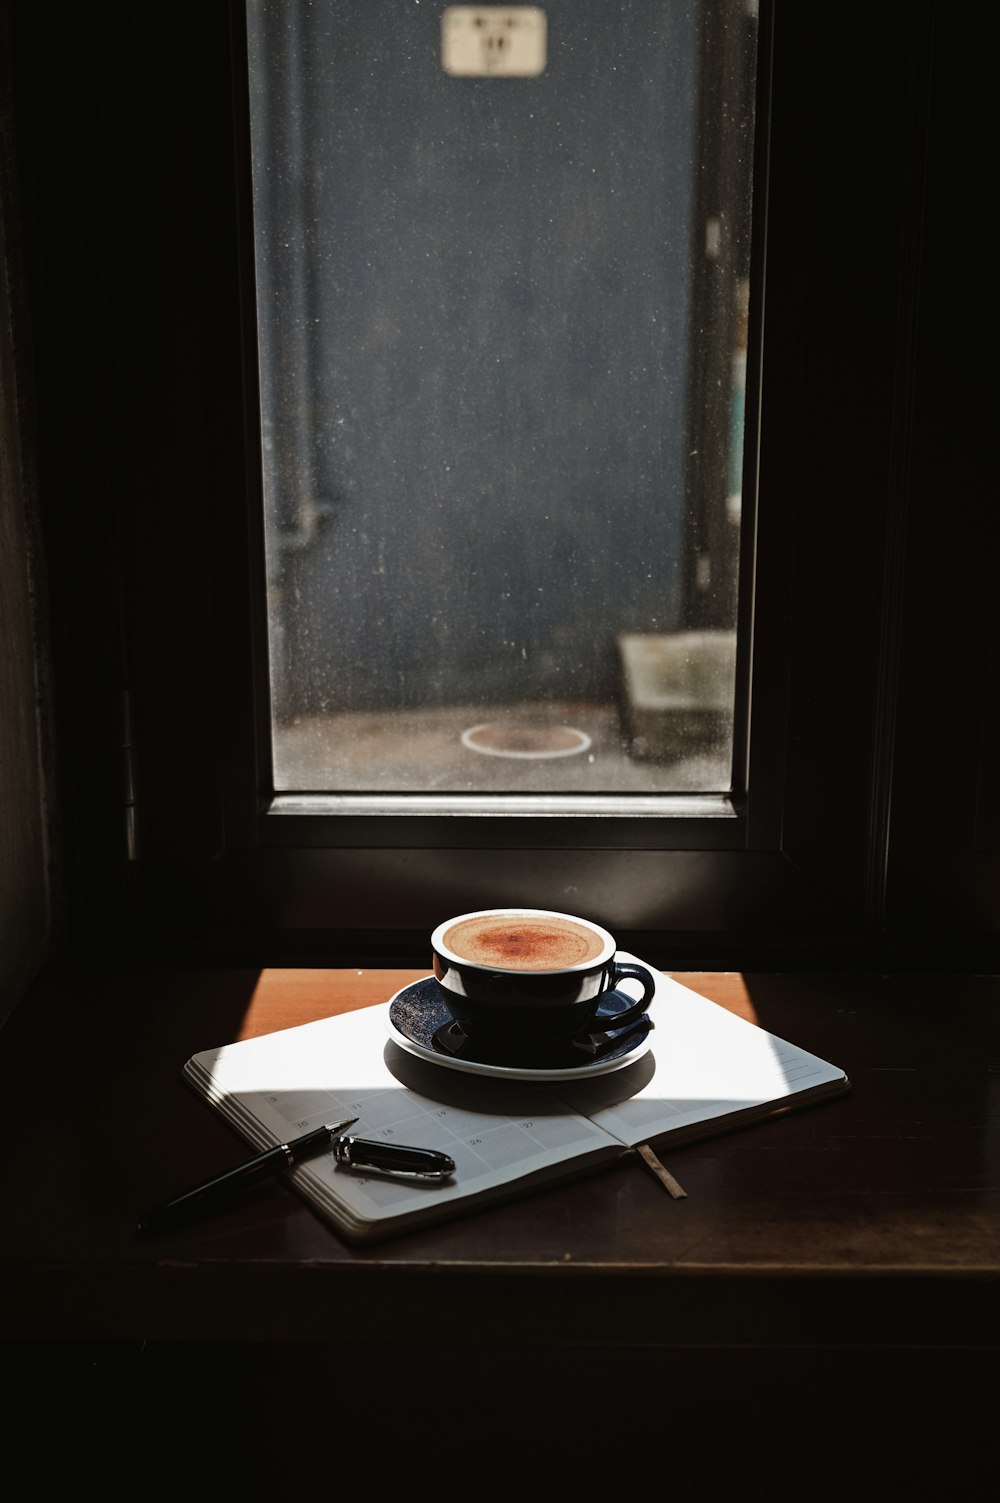 xícara de chá de cerâmica preta e branca no pires na mesa de madeira marrom